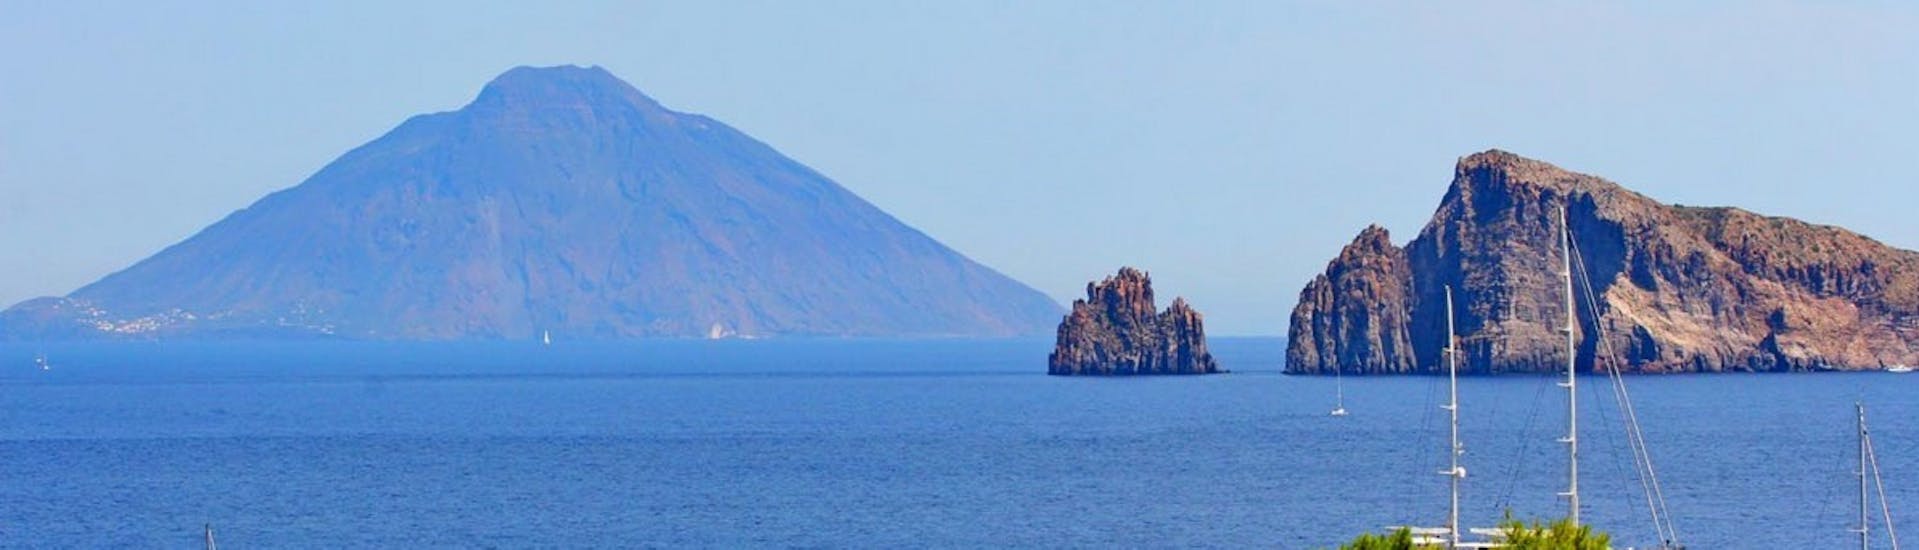 Photo des îles Éoliennes prise lors de la balade en bateau vers Stromboli, Lipari et Vulcano depuis Tropea.